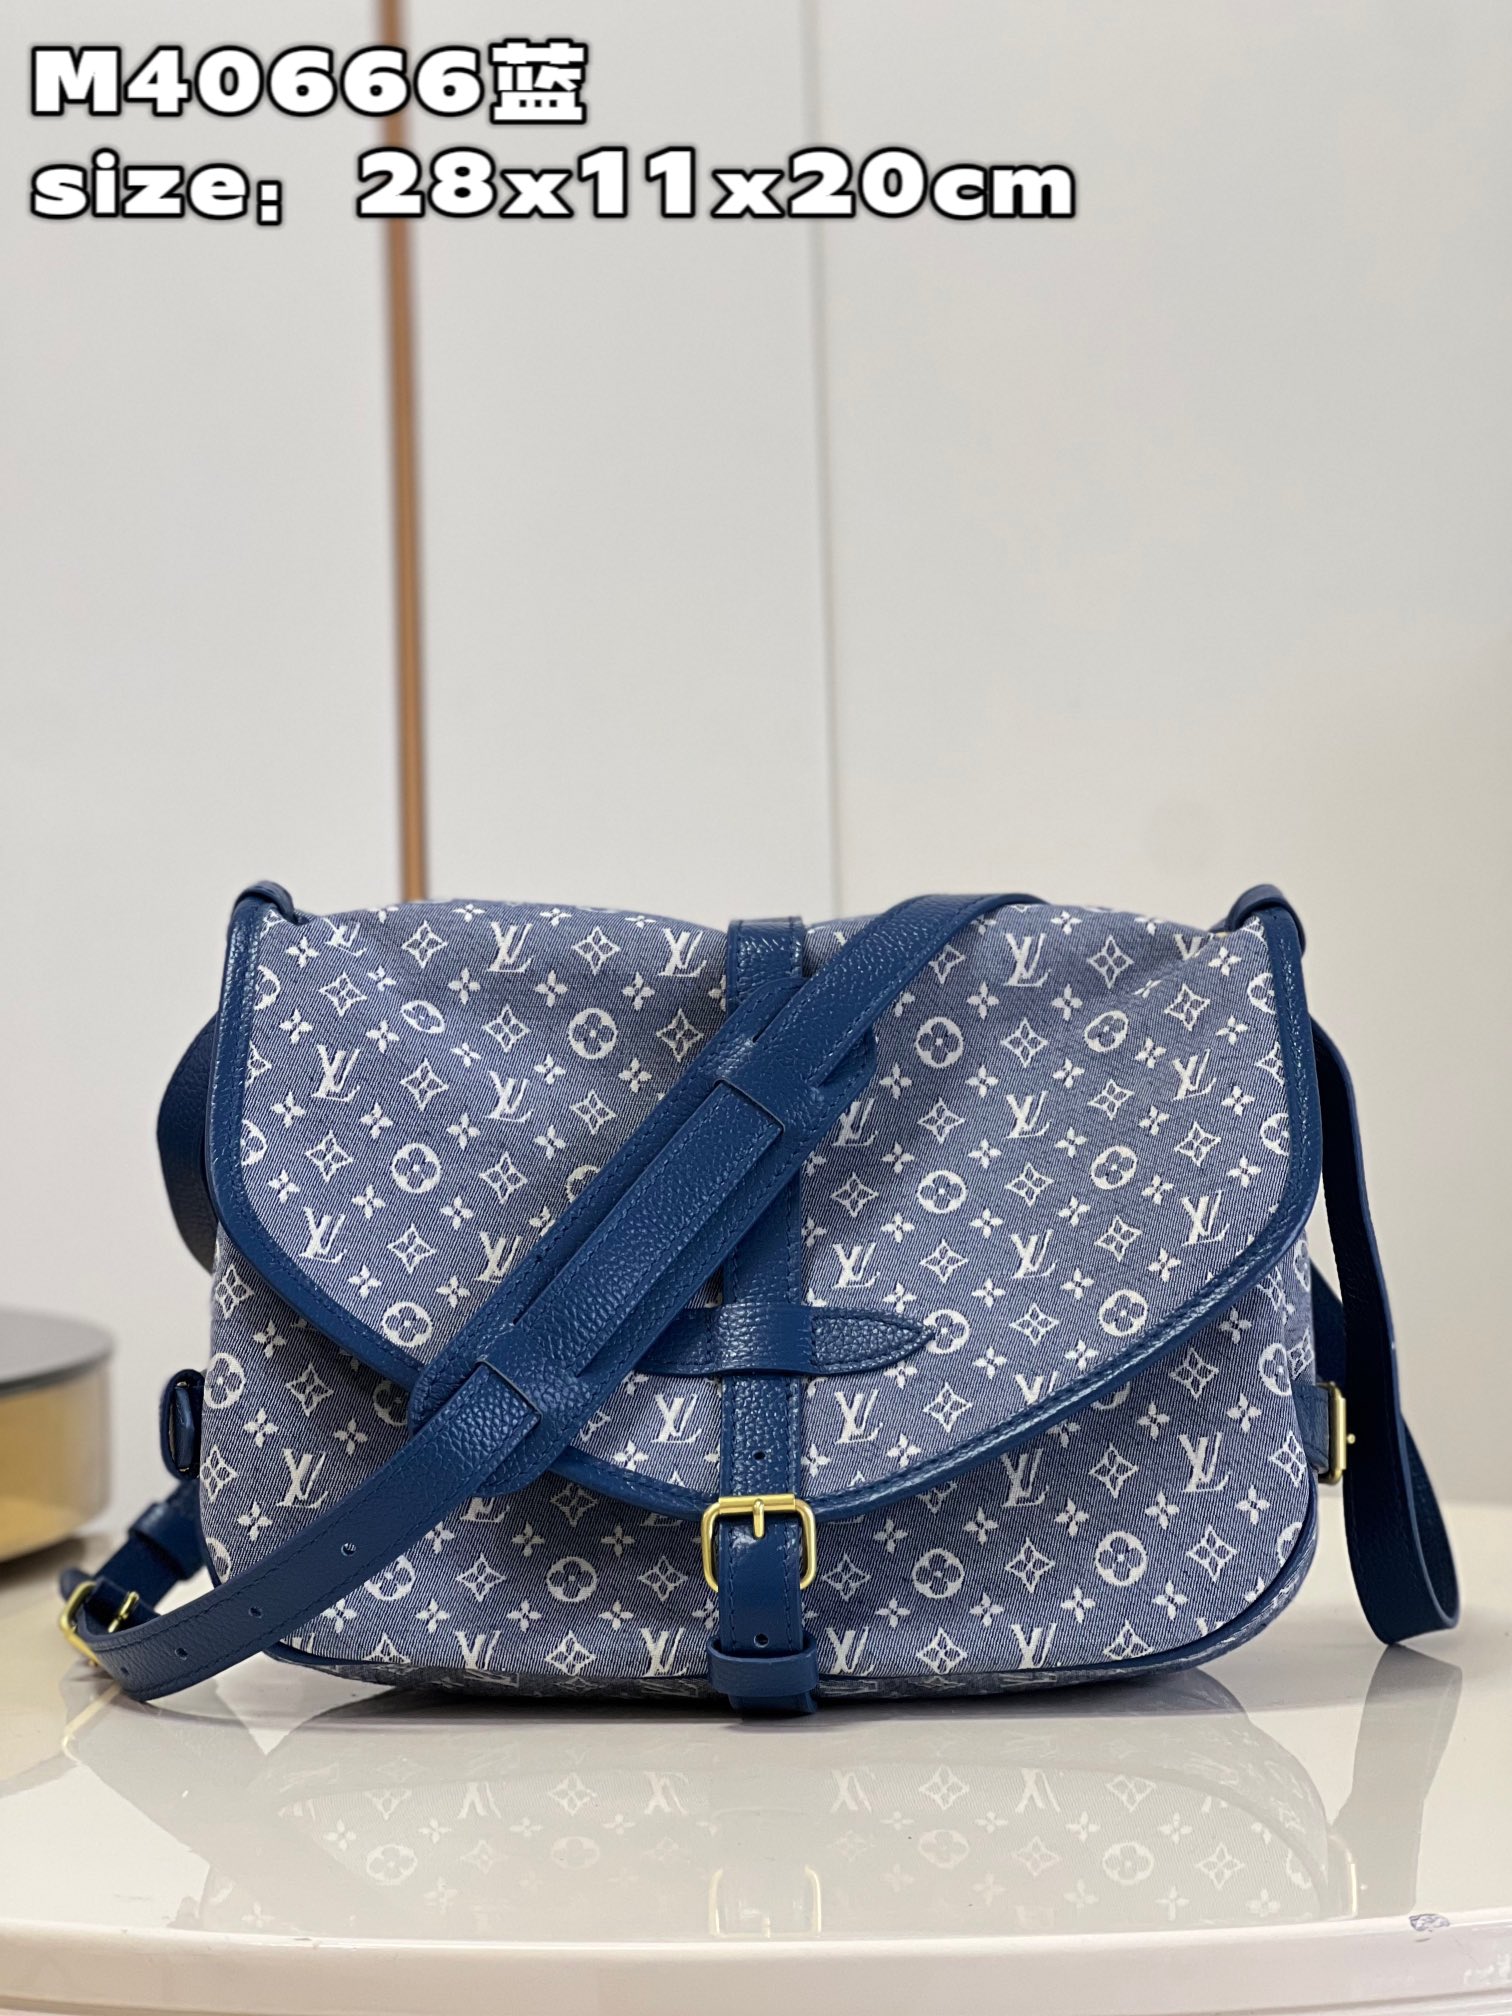 Louis Vuitton LV Saumur AAAAA
 Bags Handbags Blue Monogram Canvas Cowhide Fashion M40666